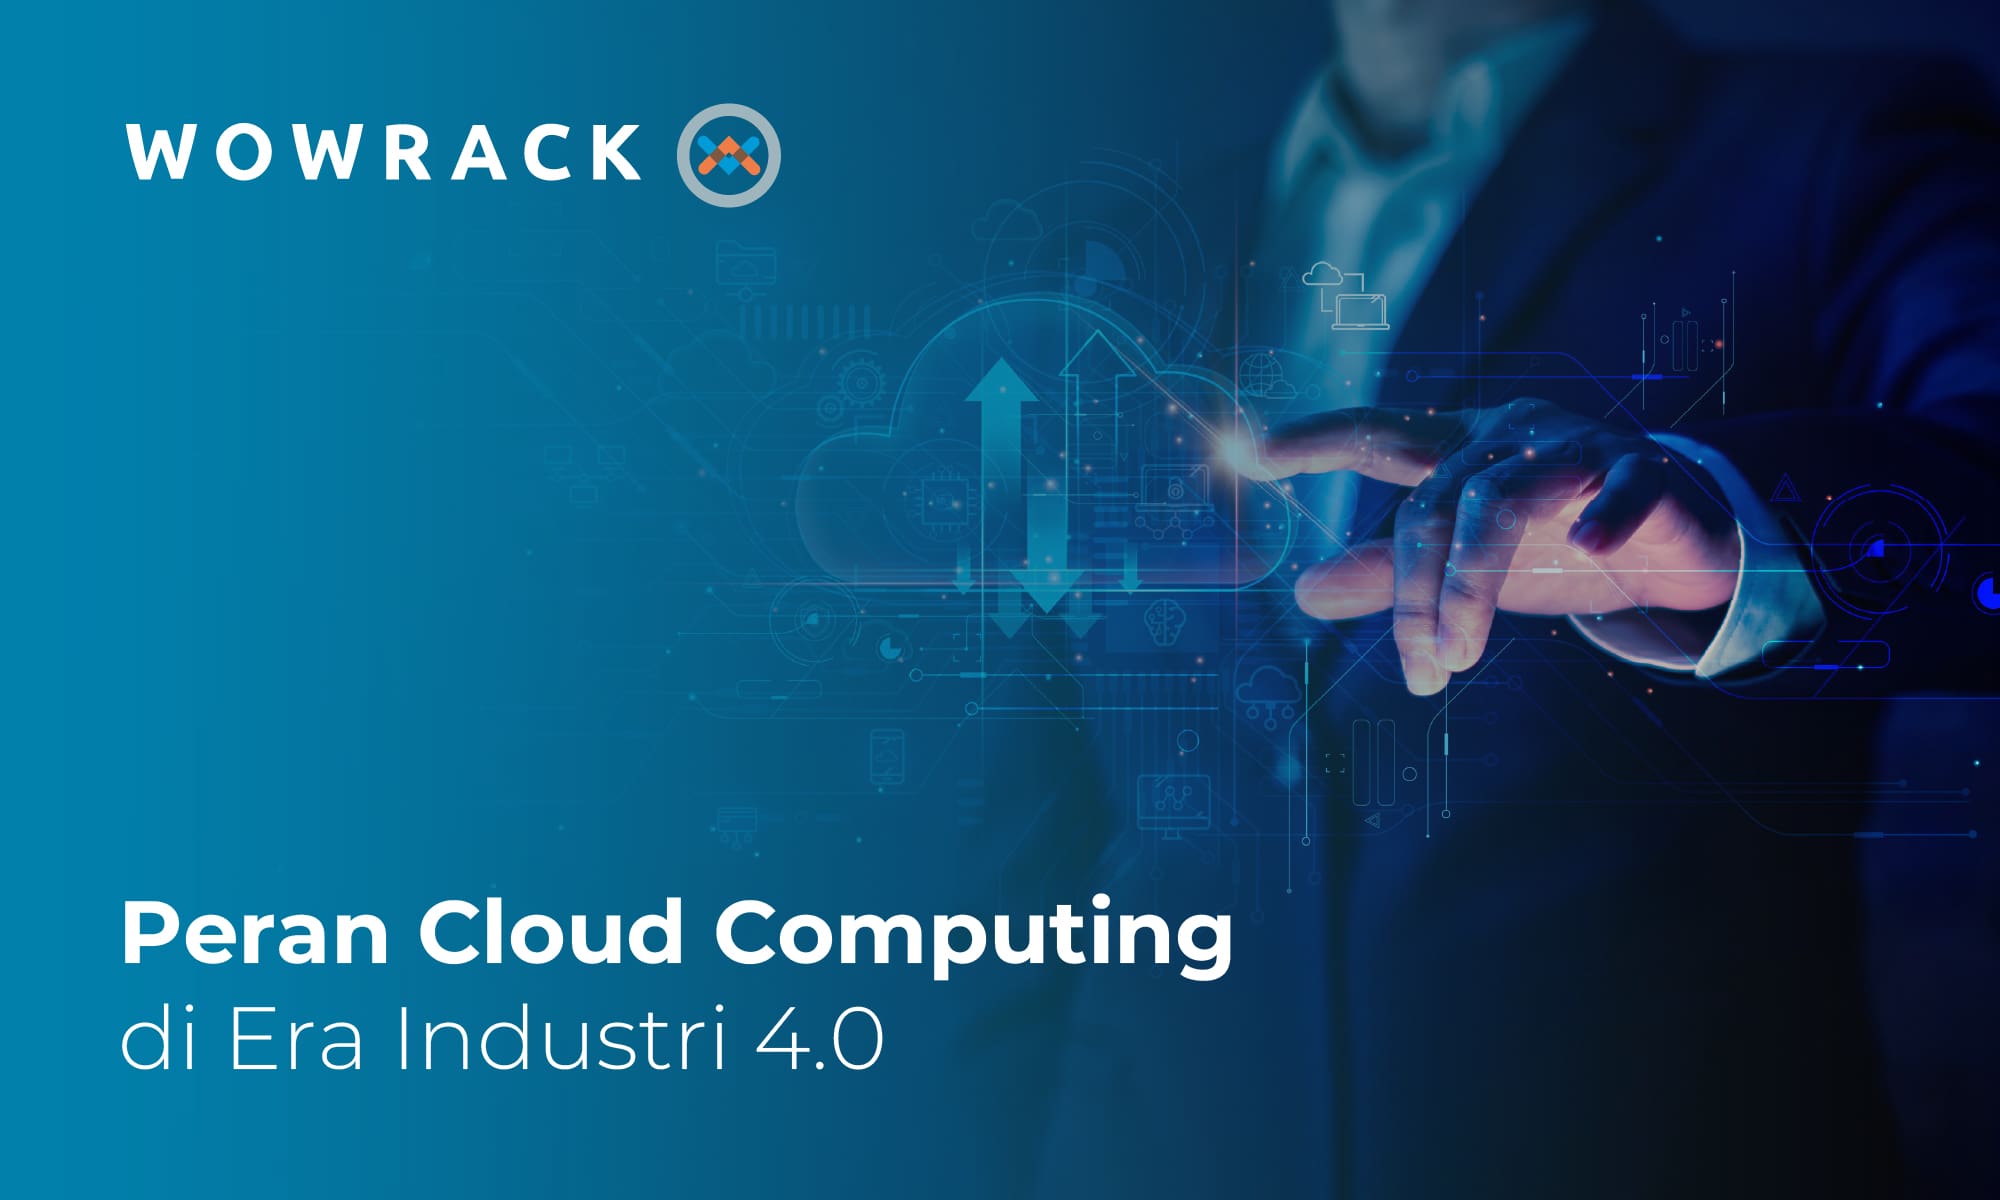 Memahami Peran Cloud Computing dalam Menciptakan Keunggulan Kompetitif di Era Industri 4.0